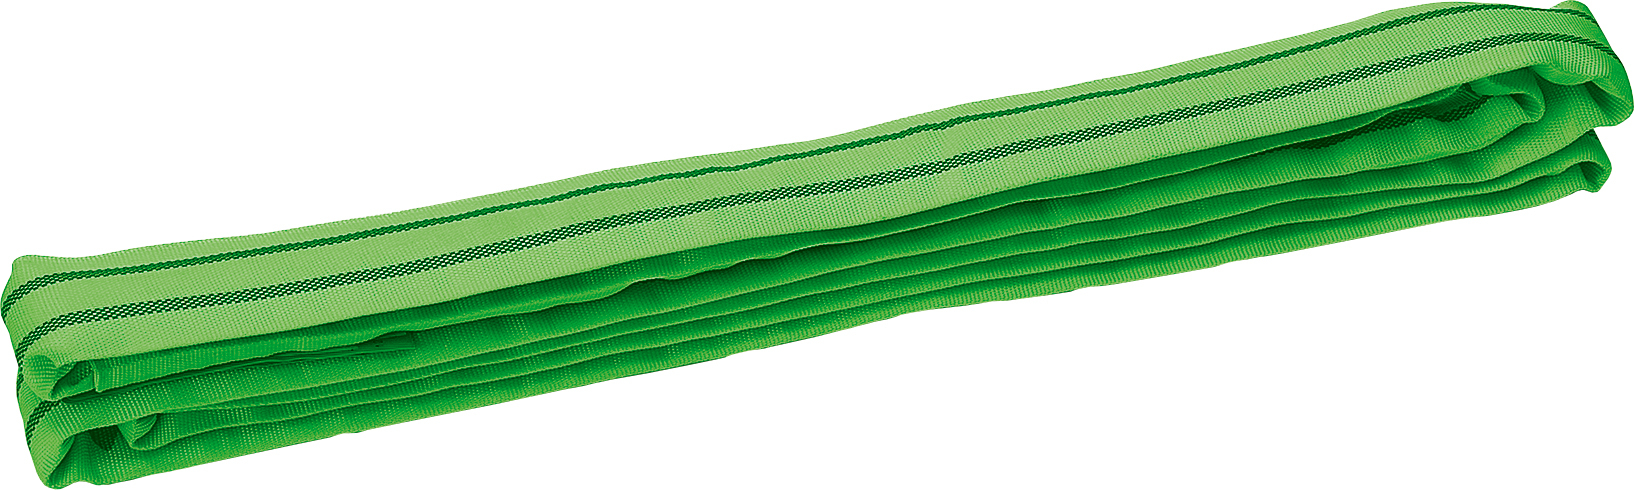 TRIUSO Rundschlinge Hebeband 2to grün 6m 